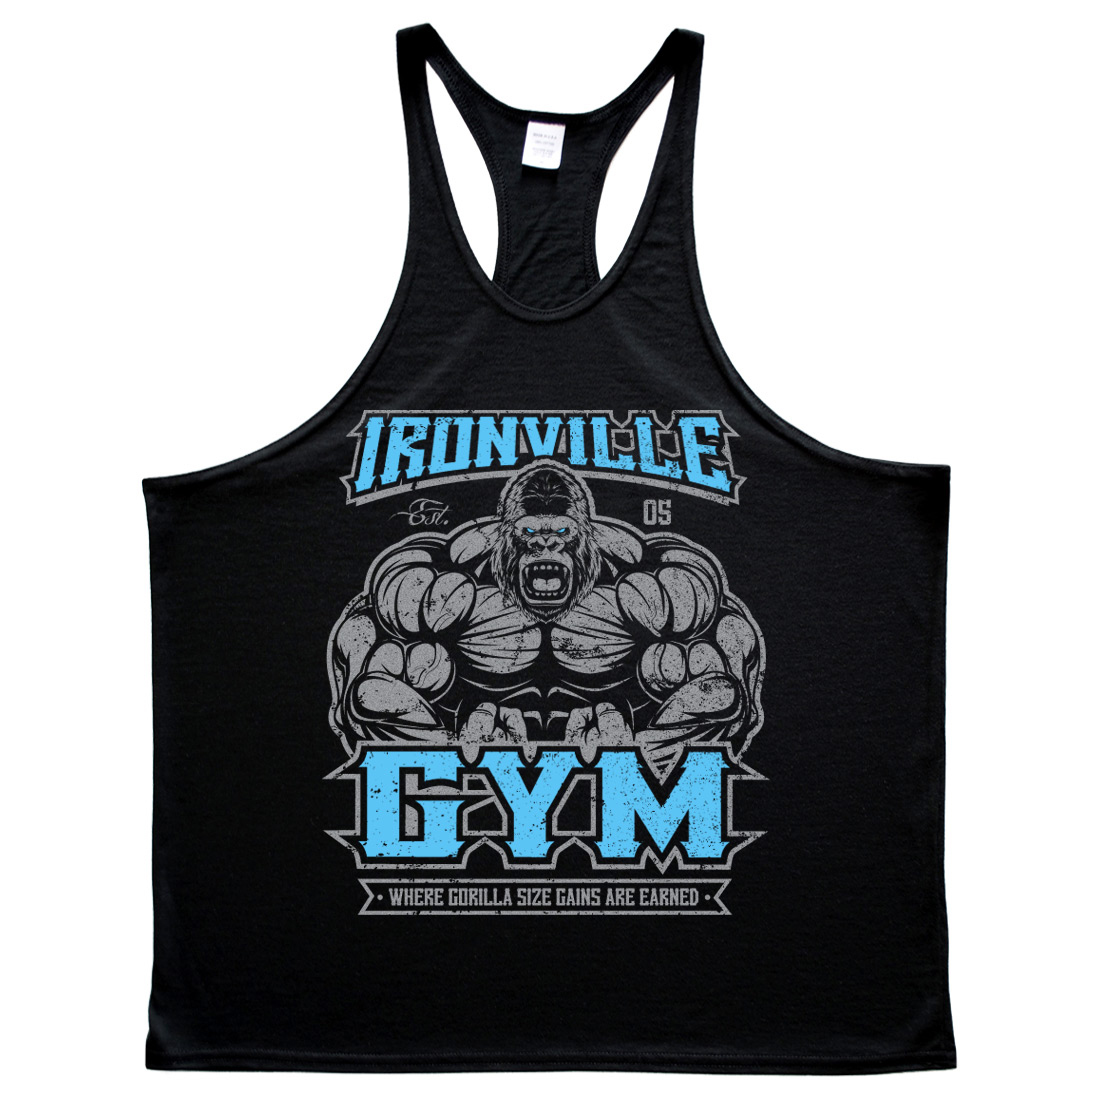 Gorilla Wear Stringer Tank Top Tshirt Hoodie Jumper Bodybuilding Fitness Gym